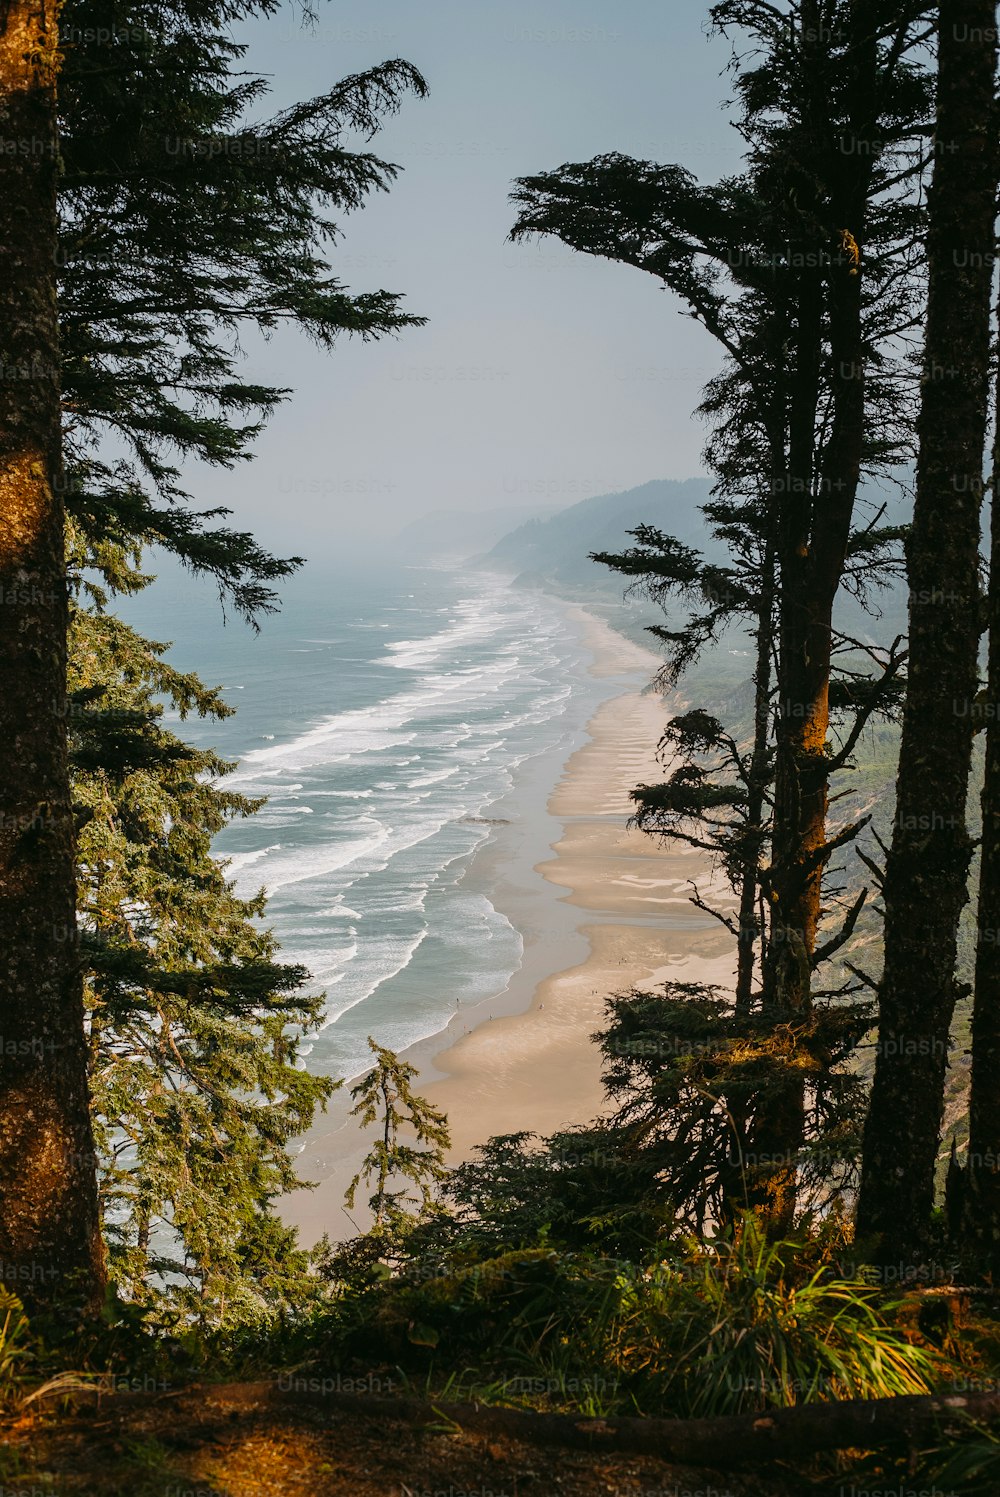 una vista di una spiaggia attraverso alcuni alberi